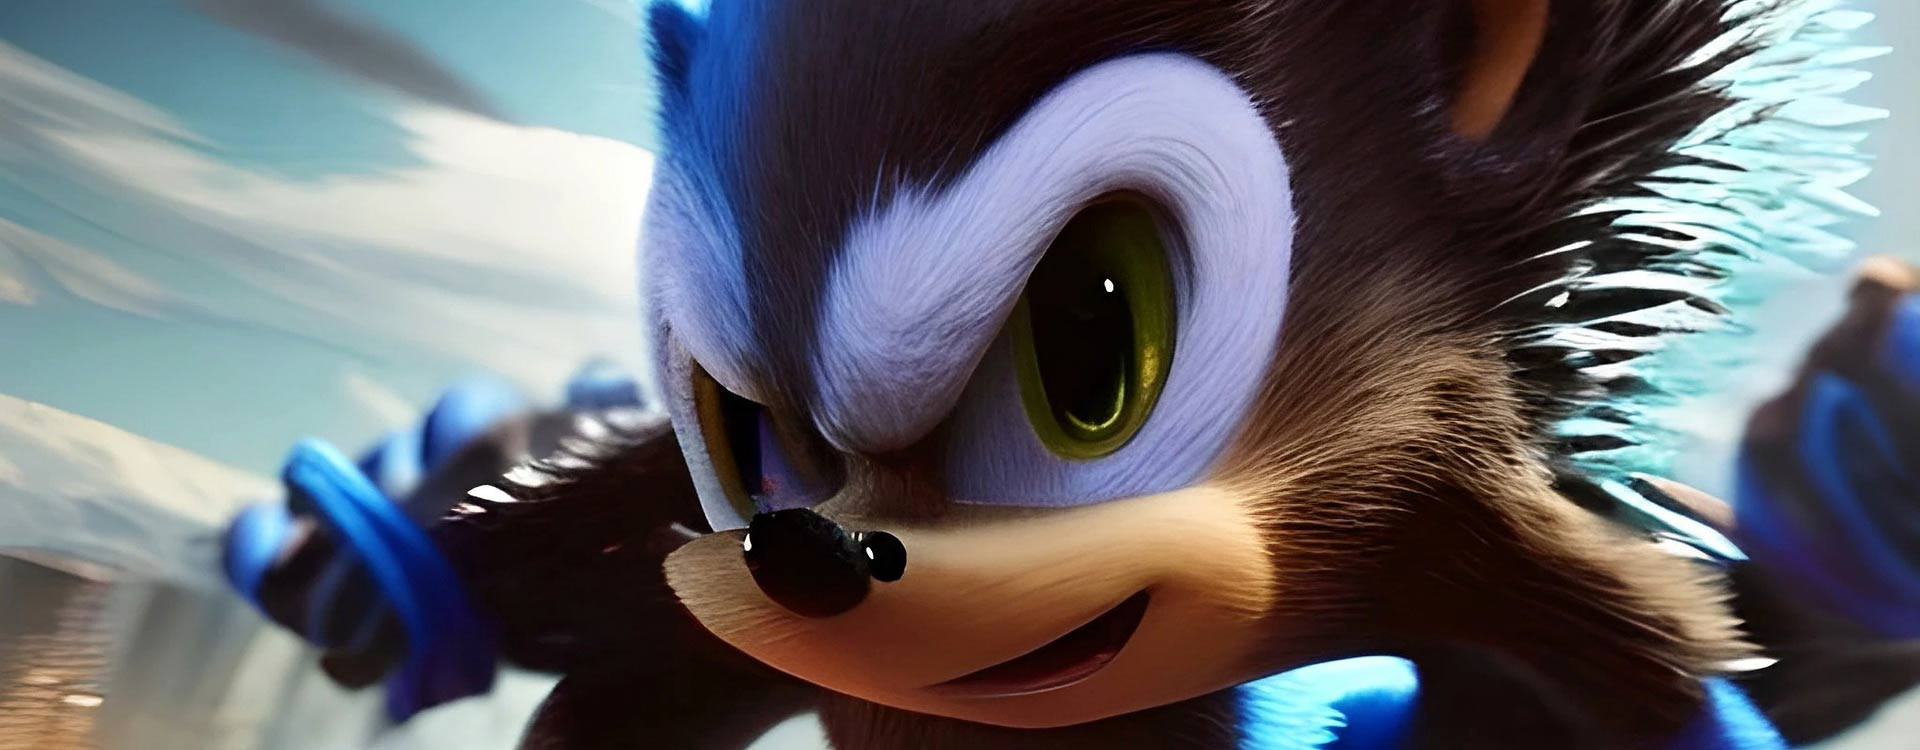 Super Sonic The Hedgehog Jouets En Peluche - Jaune - 32cm